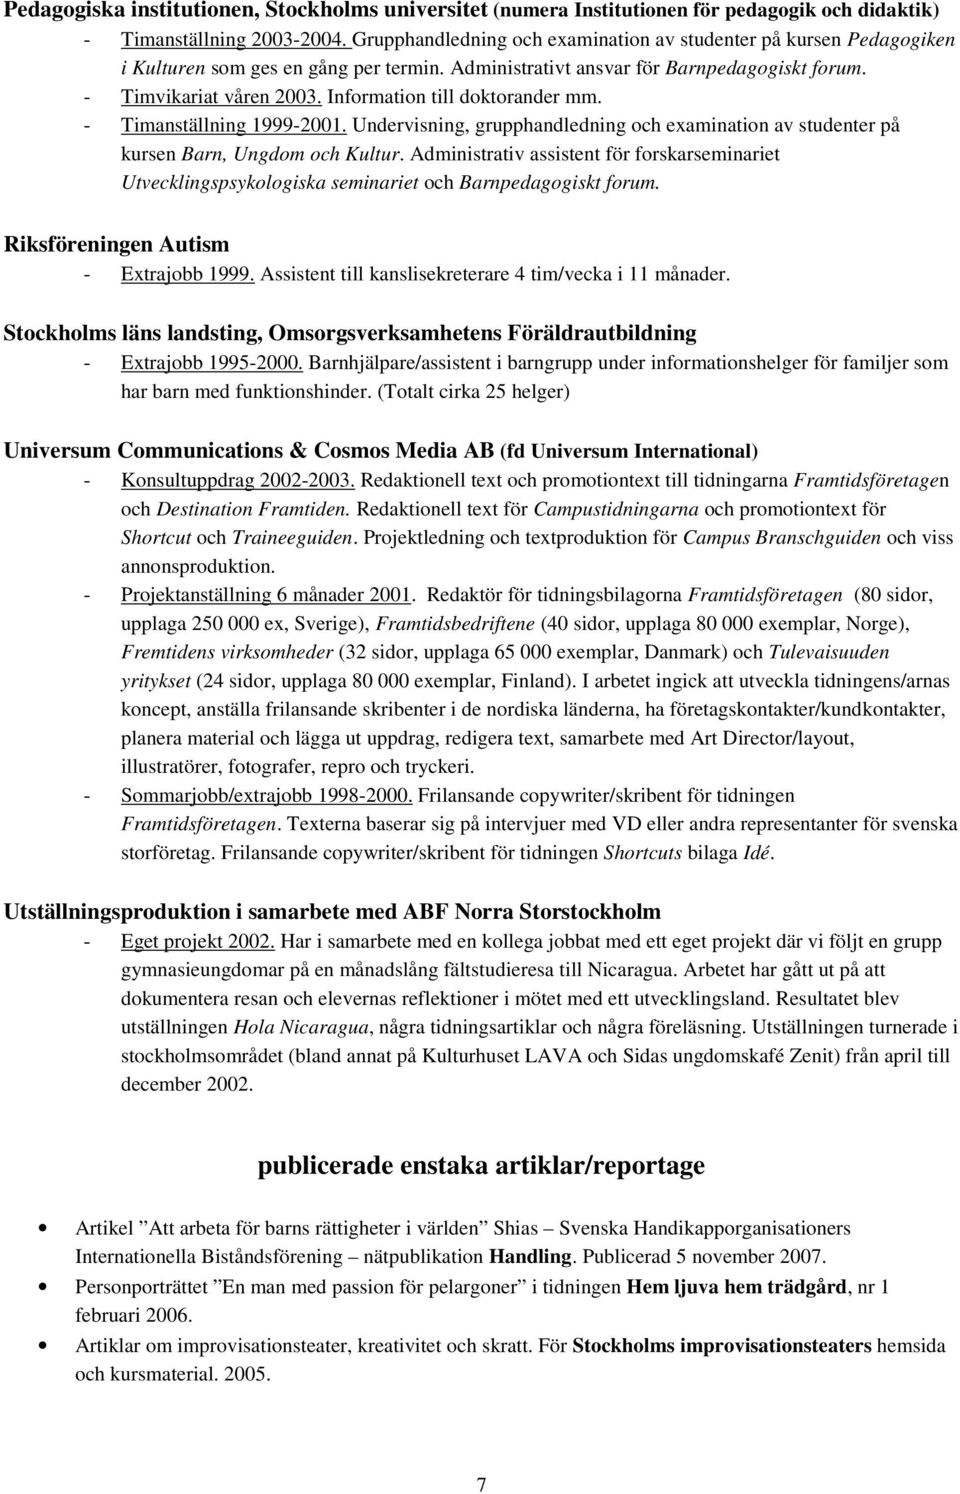 Information till doktorander mm. - Timanställning 1999-2001. Undervisning, grupphandledning och examination av studenter på kursen Barn, Ungdom och Kultur.